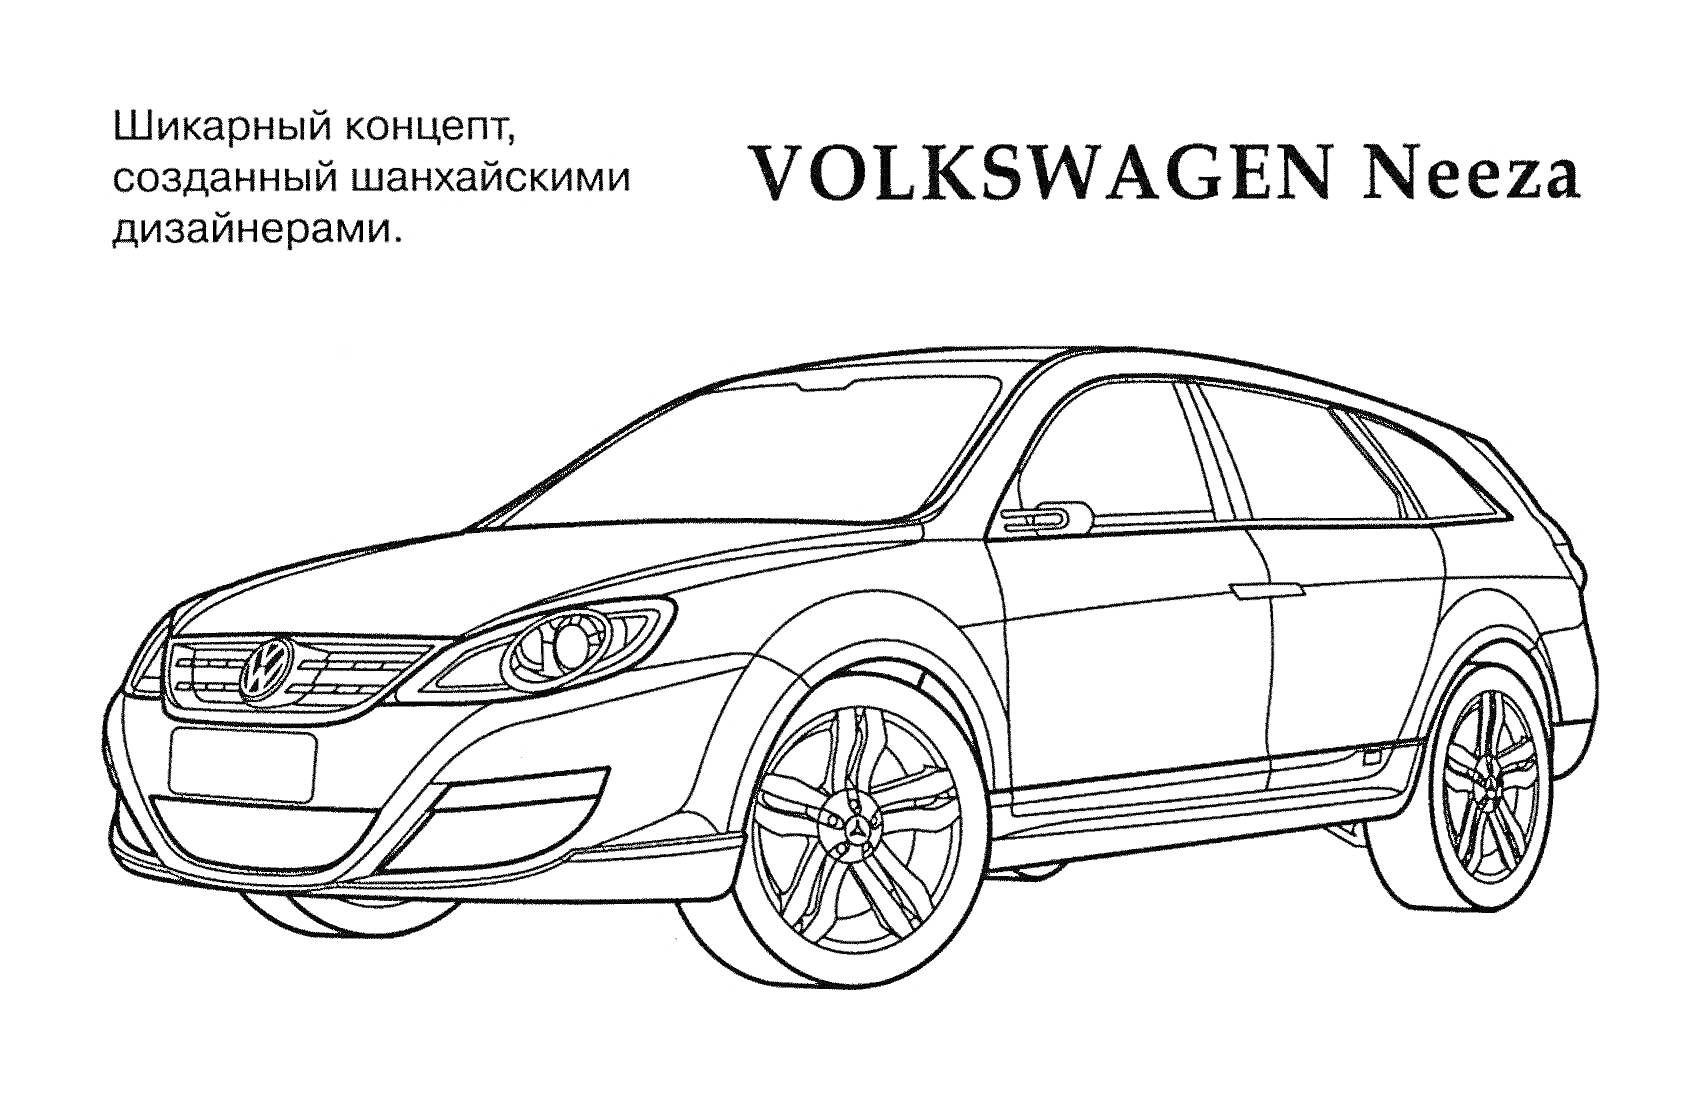 Volkswagen Neeza, роскошный концепт, созданный шанхайскими дизайнерами, автомобиль со всеми элементами на фото (включая кнопки, фары, зеркала, логотип и т.д.)